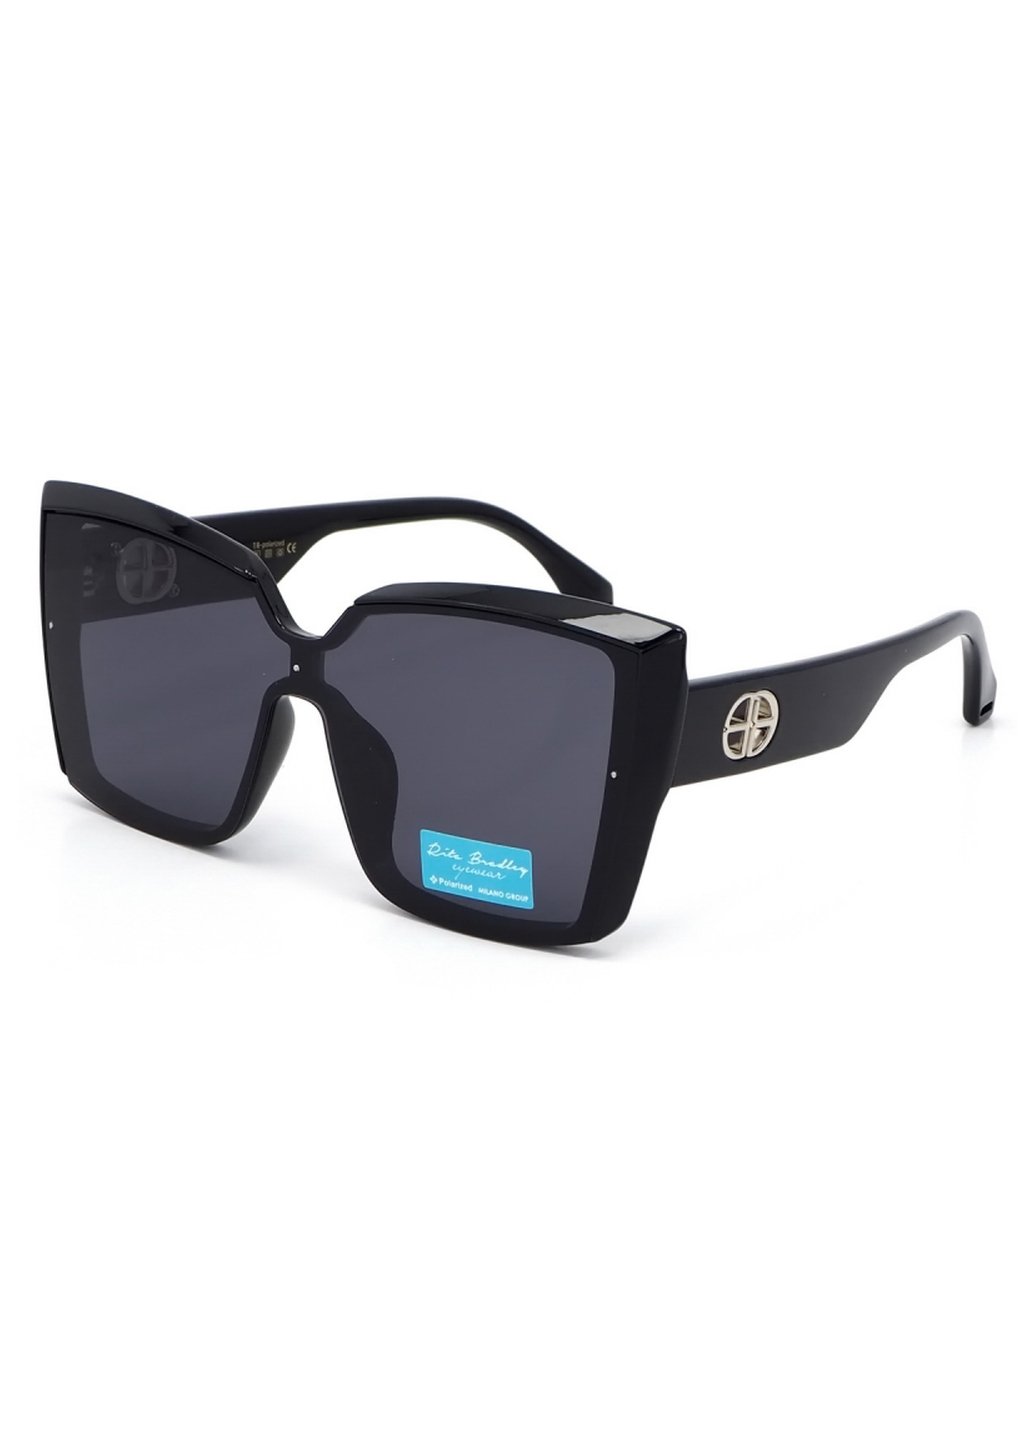 Купить Женские солнцезащитные очки Rita Bradley с поляризацией RB725 112047 в интернет-магазине